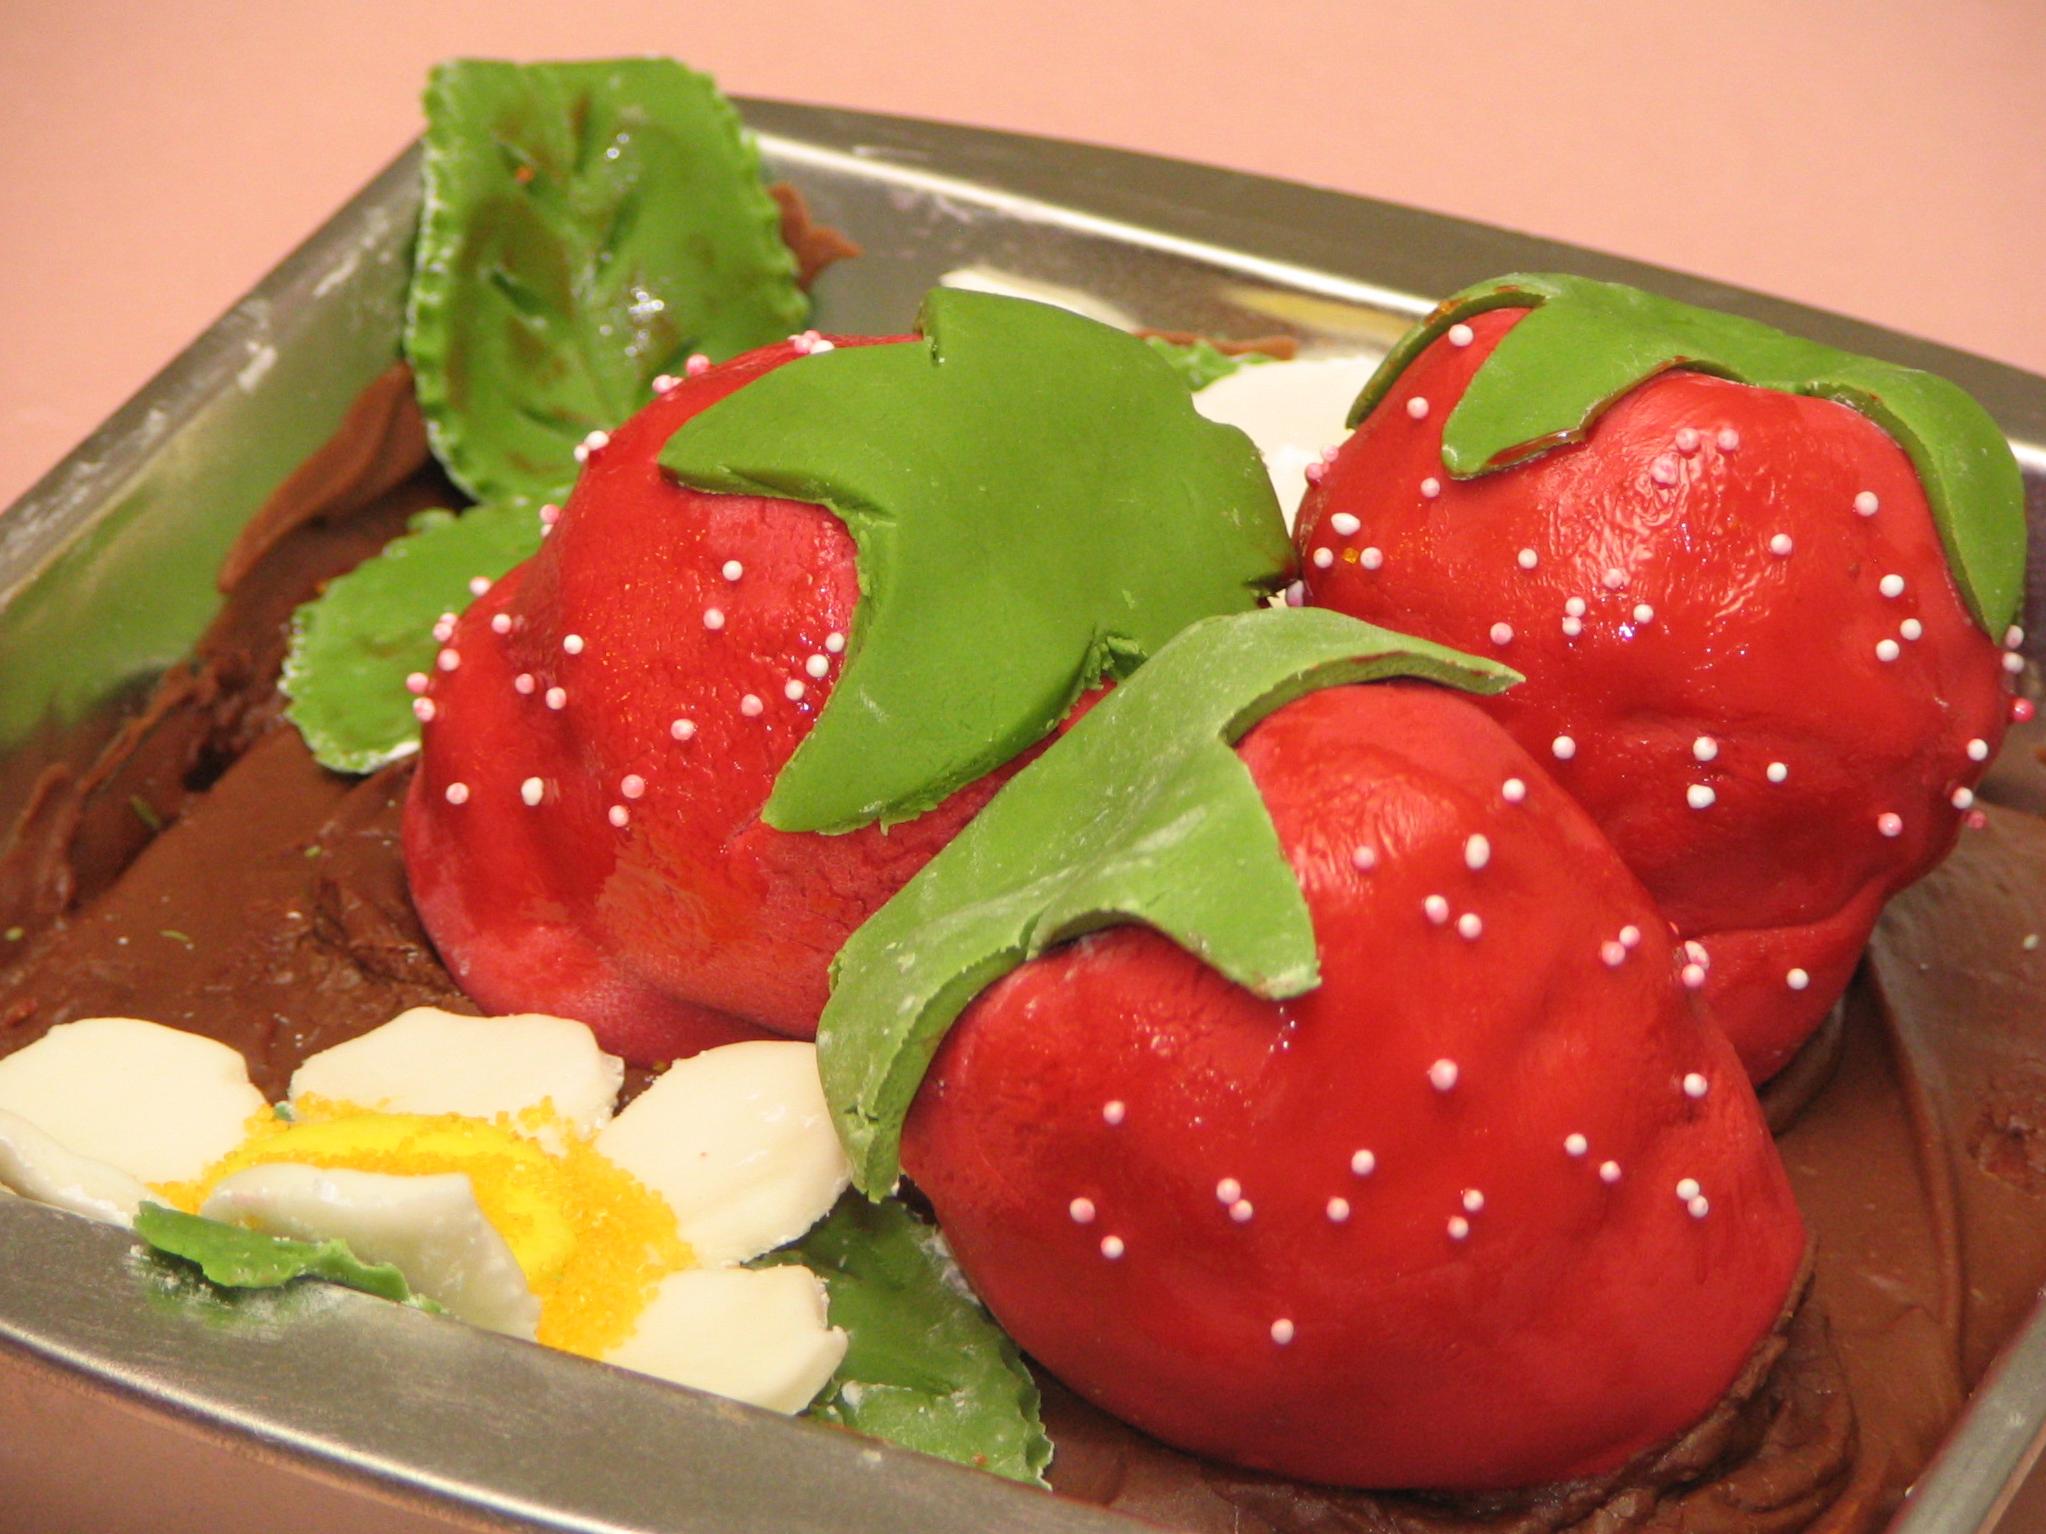 Strawberry Jello Pound Cake